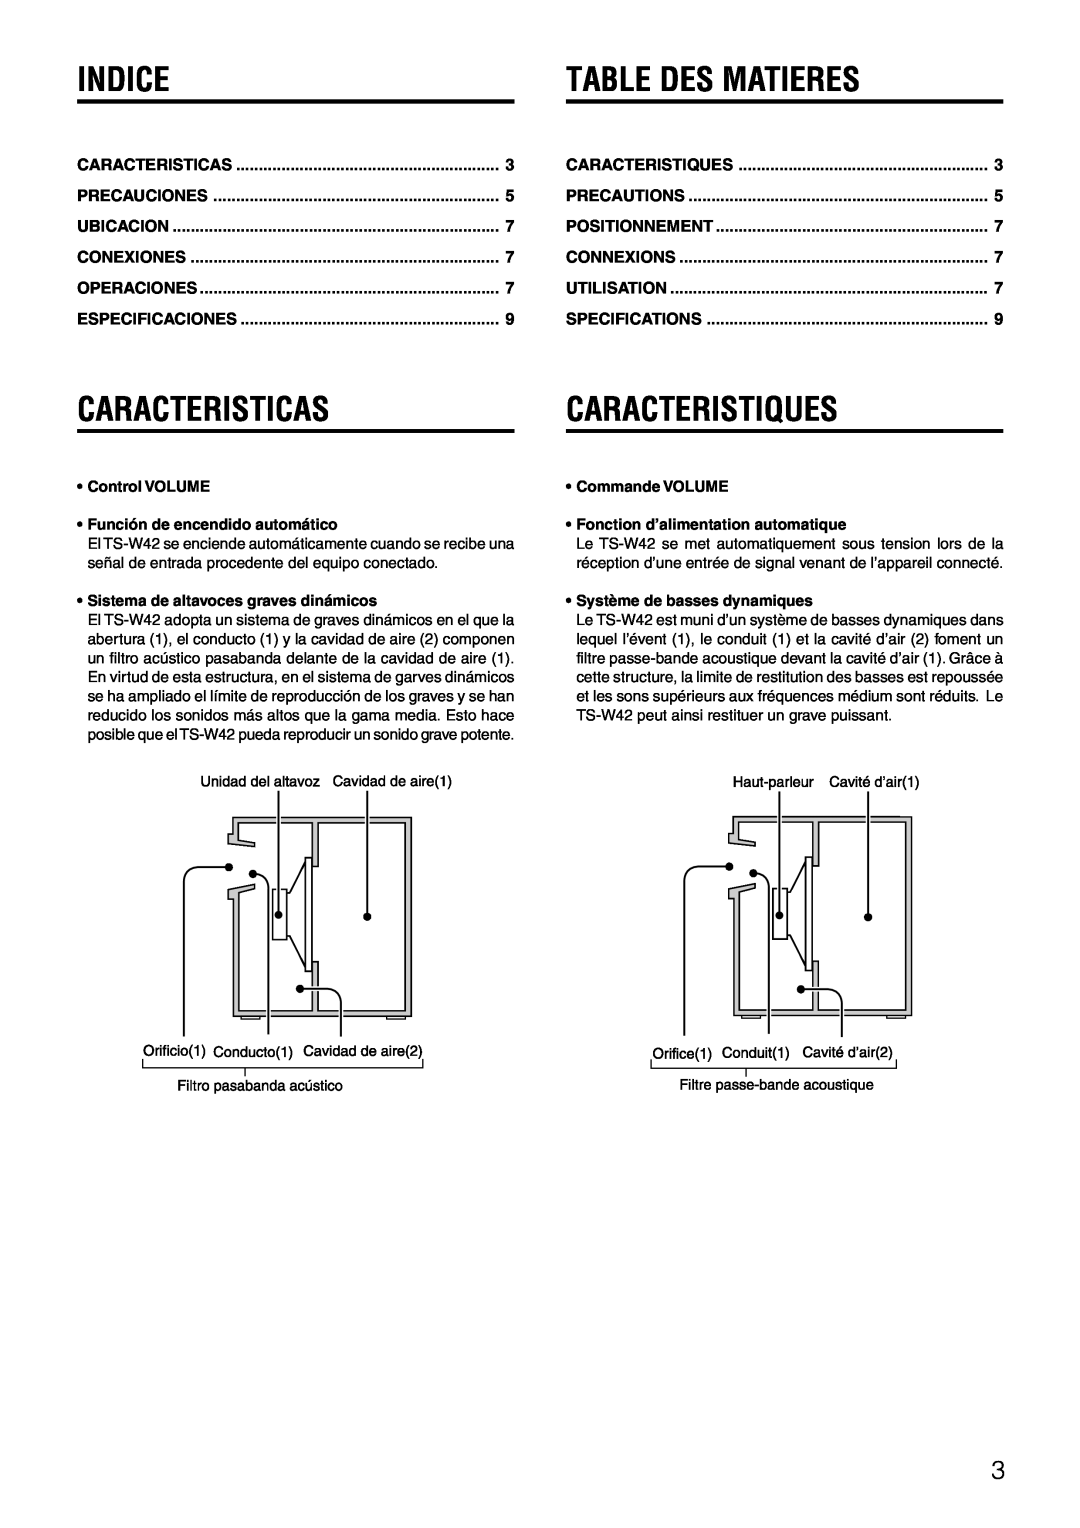 Aiwa TS-W42 U manual Indice, Table Des Matieres, Caracteristicas, Caracteristiques 